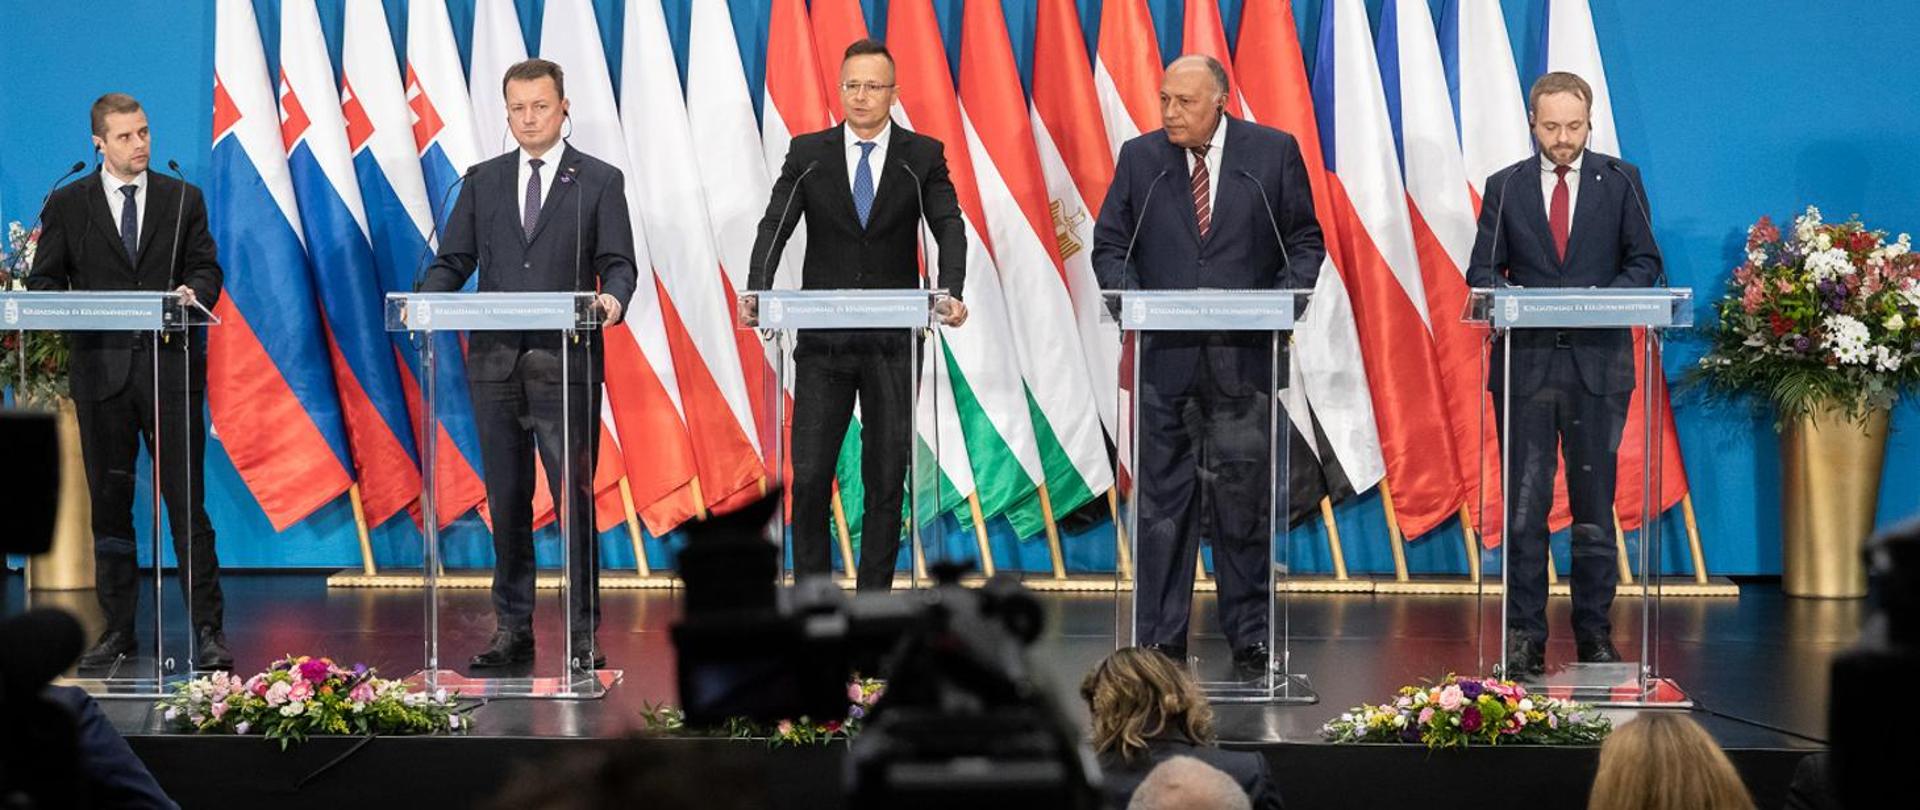 Minister Mariusz Błaszczak wraz z innymi ministrami stoją przy mównicach.